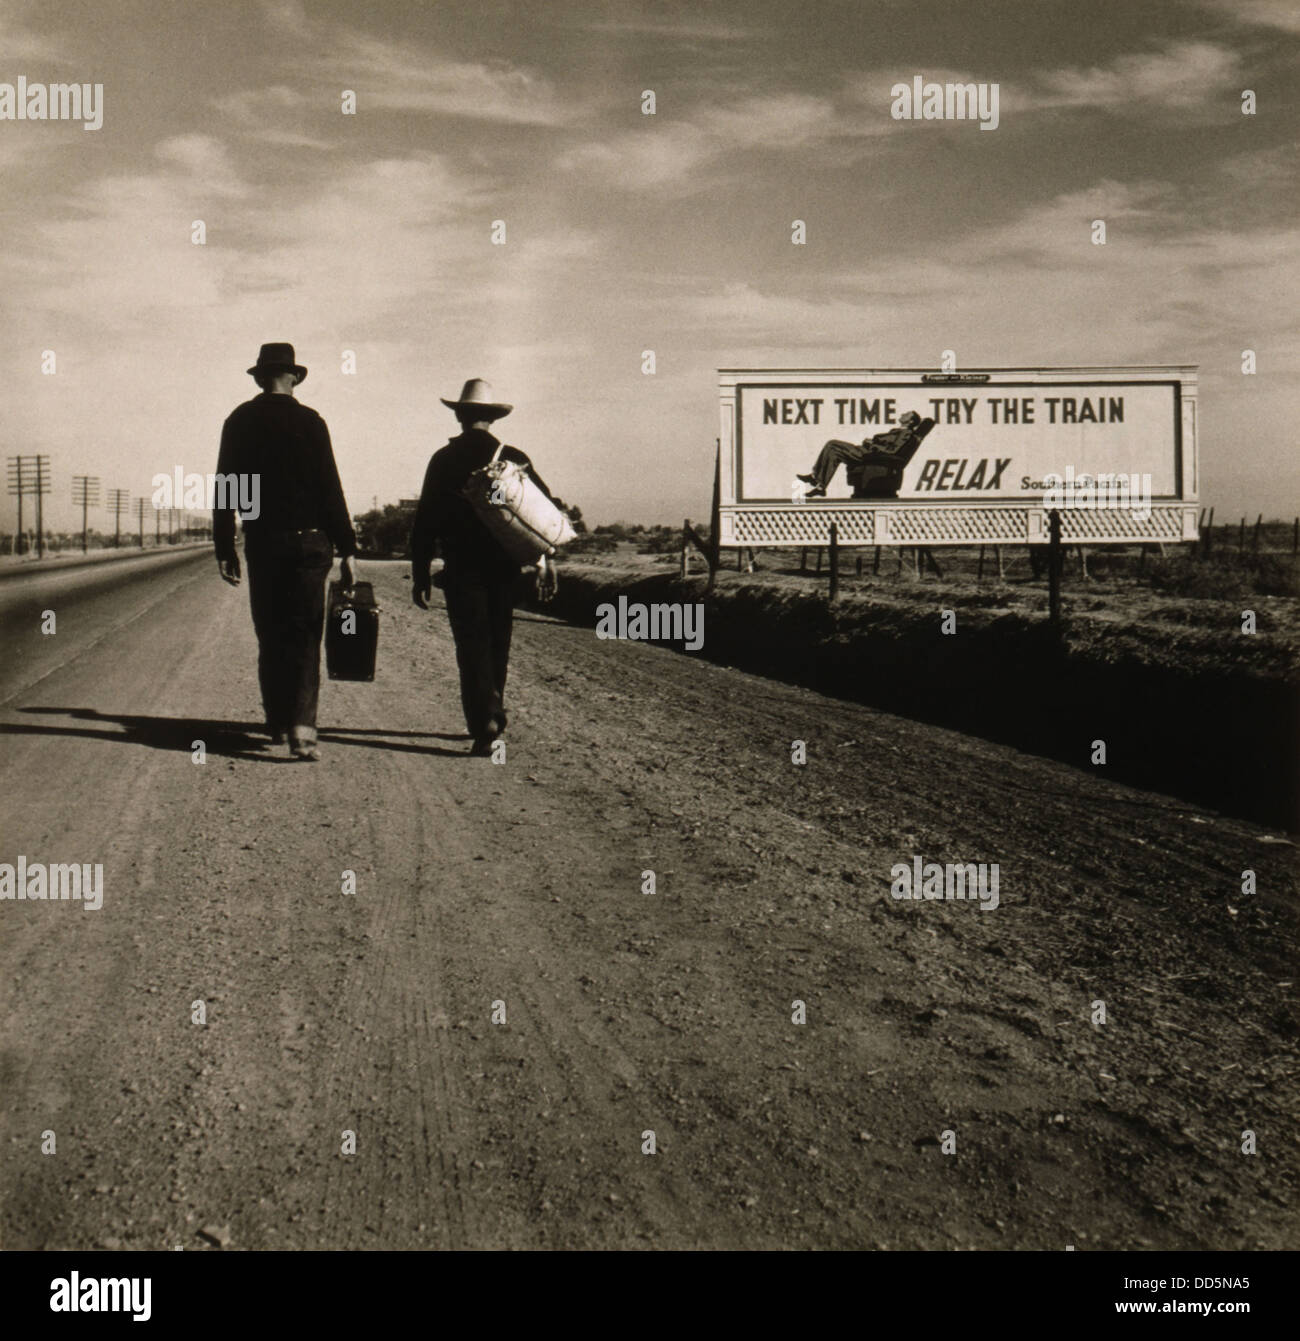 Zwei Männer gehen in Richtung Los Angeles März 1937. Vor ihnen ist eine südliche pazifische Eisenbahn Werbetafel lesen, "das nächste Mal versuchen Stockfoto